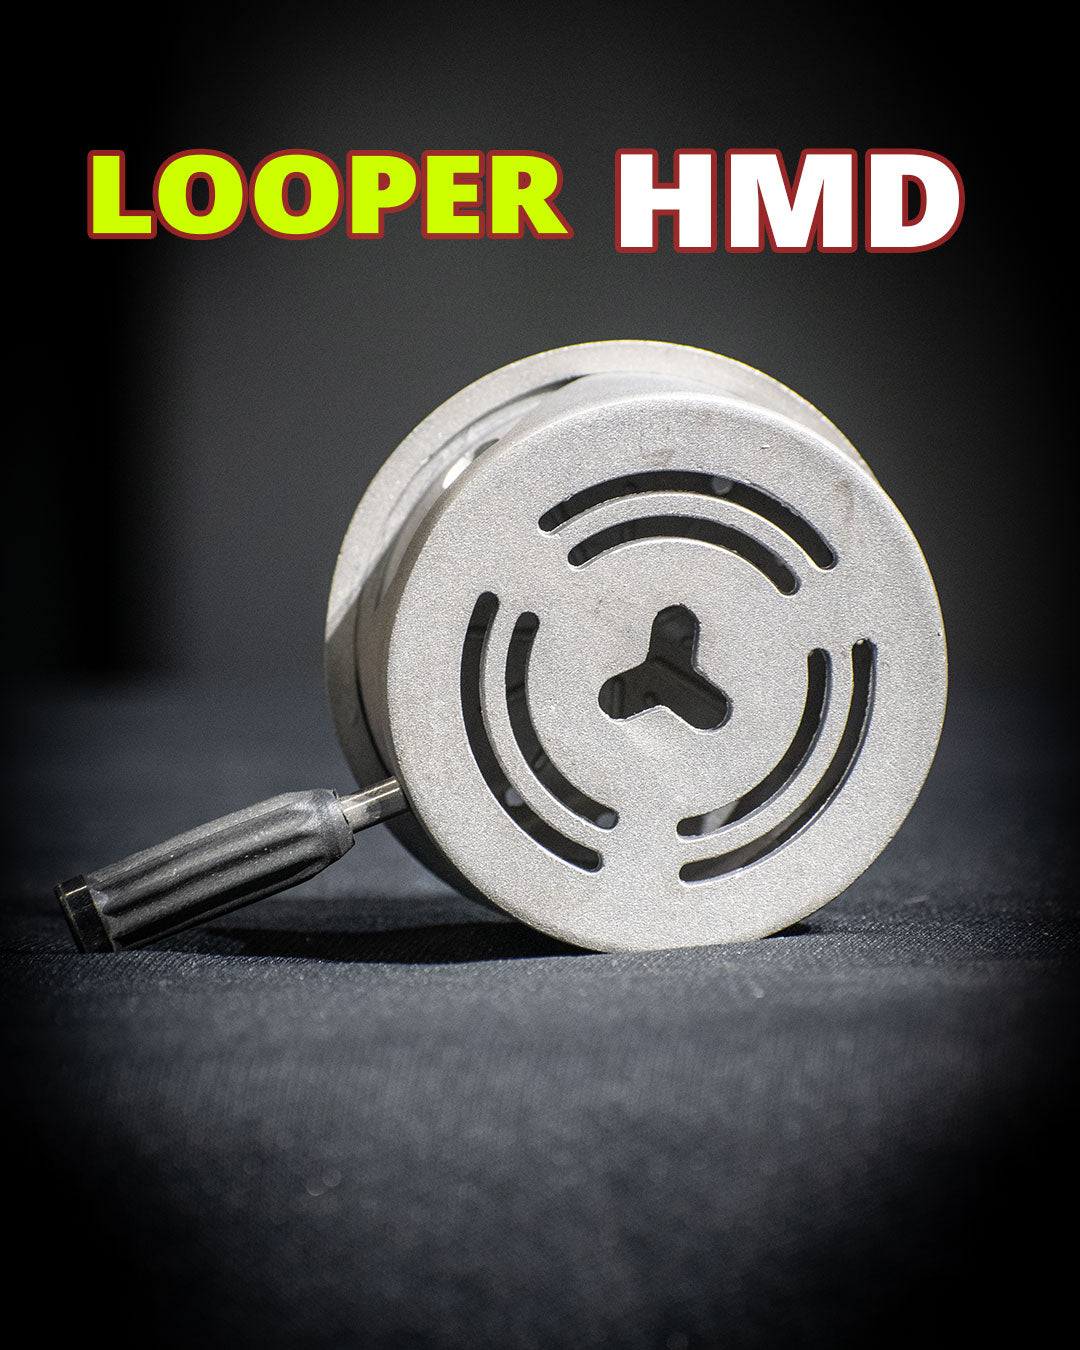 लूपर एचएमडी - हुक्का हीट मैनेजमेंट डिवाइस